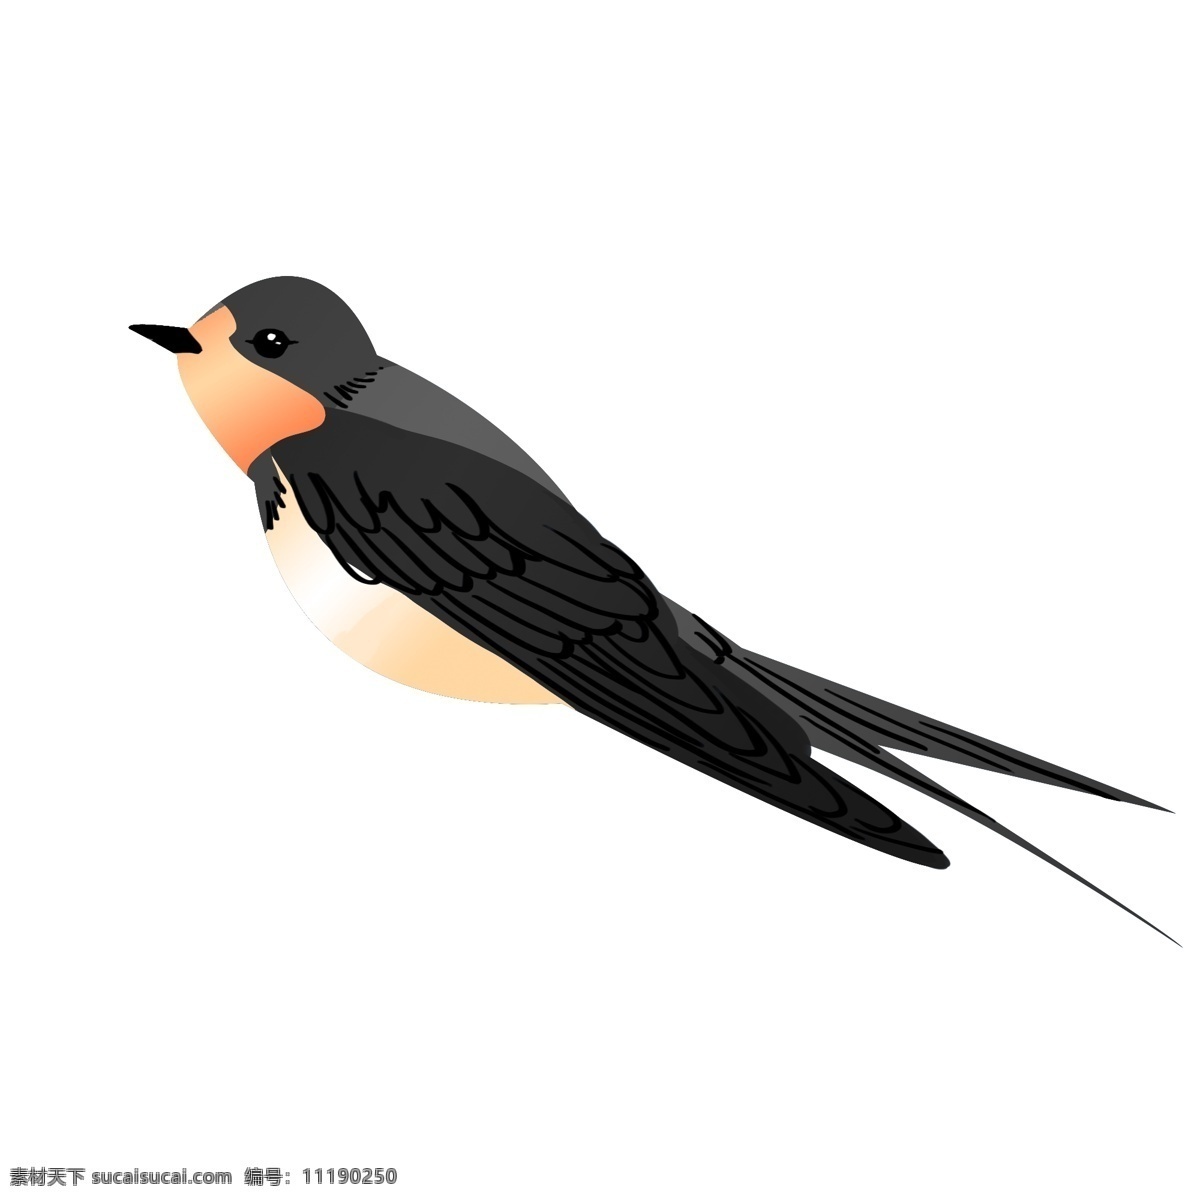 立春 黑色 燕子 插画 飞行的燕子 黑色的翅膀 手绘燕子 动物 立春手绘插画 黑色的燕子 燕子插画